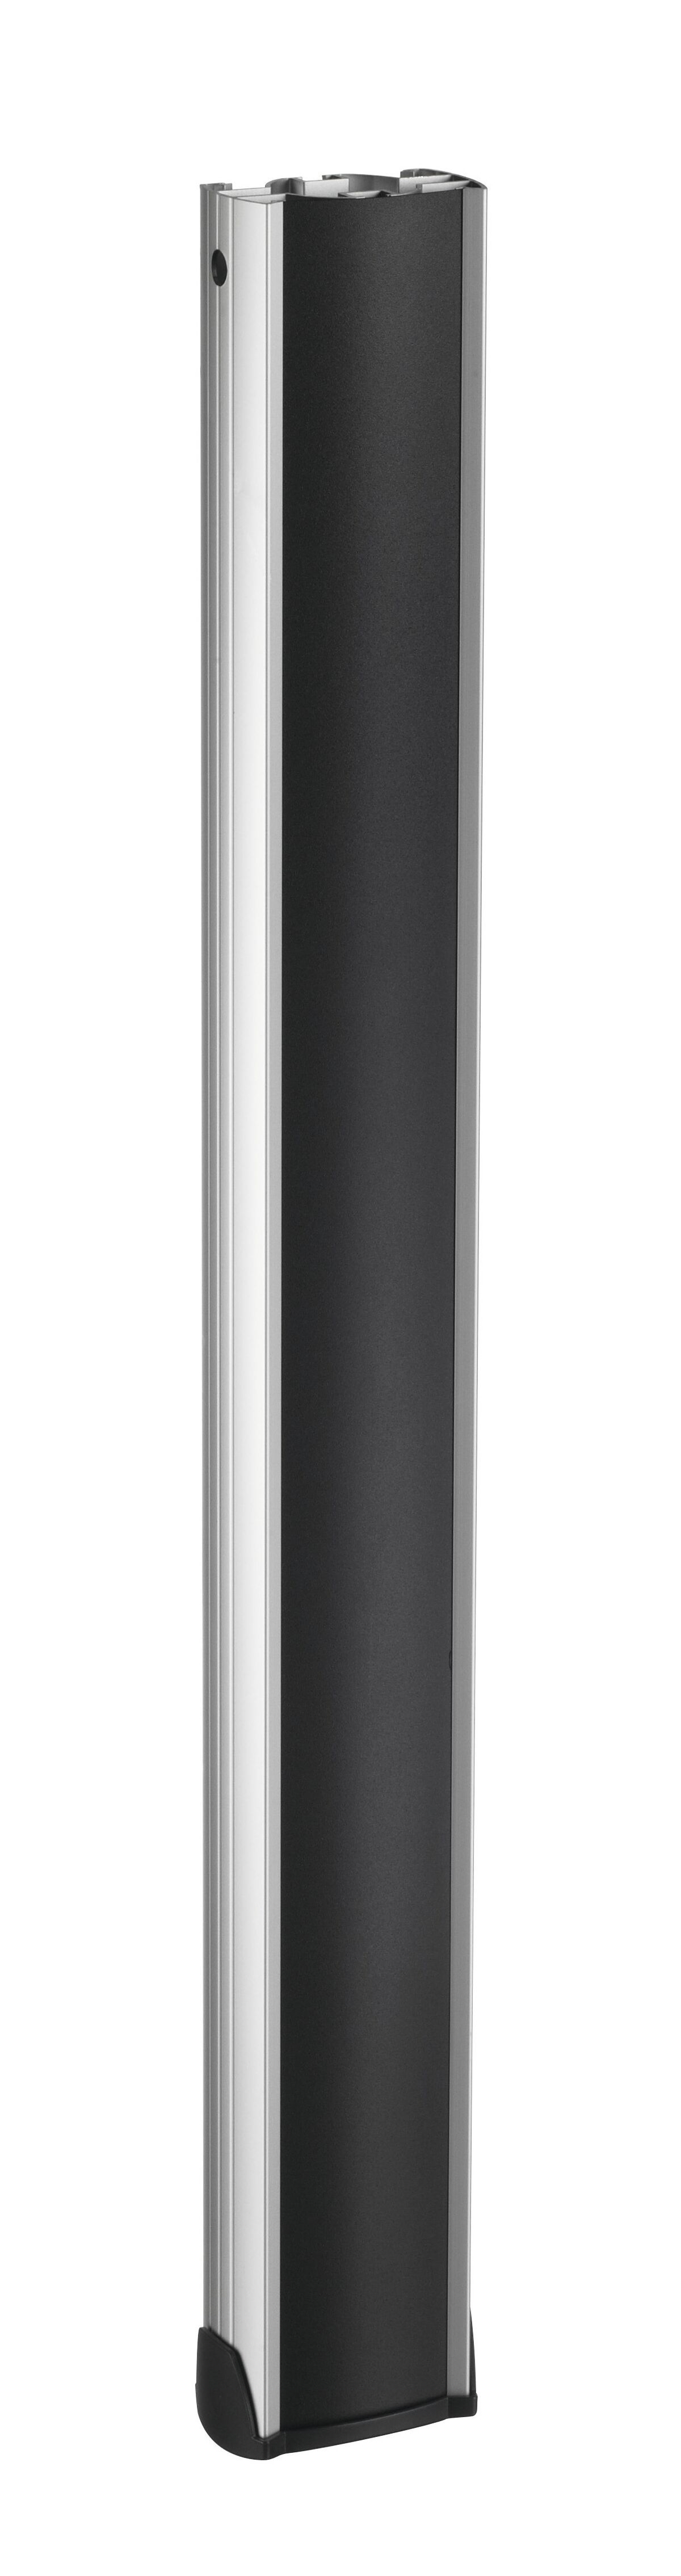 Vogel's PUC 2508 Pole 80 cm silver - Product